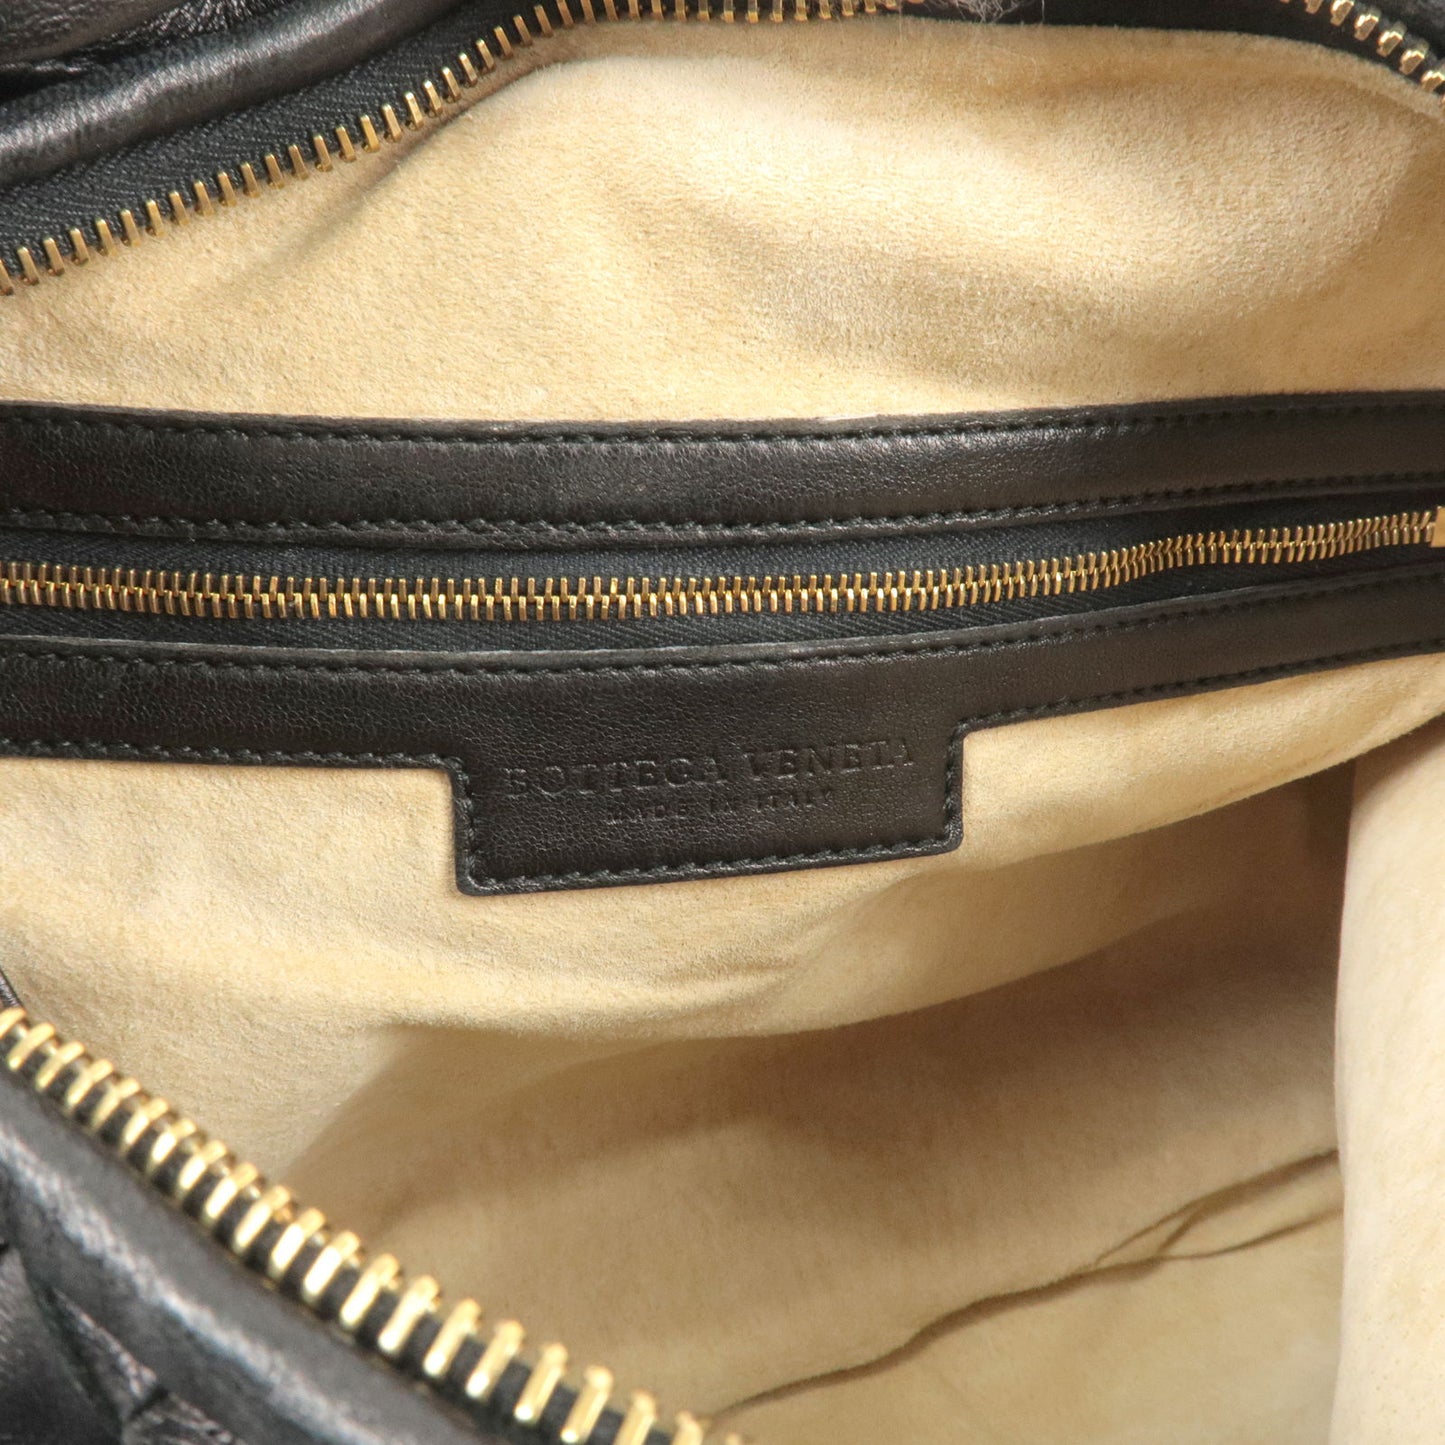 BOTTEGA VENETA Intrecciato Leather Hobo Shoulder Bag Black 115654